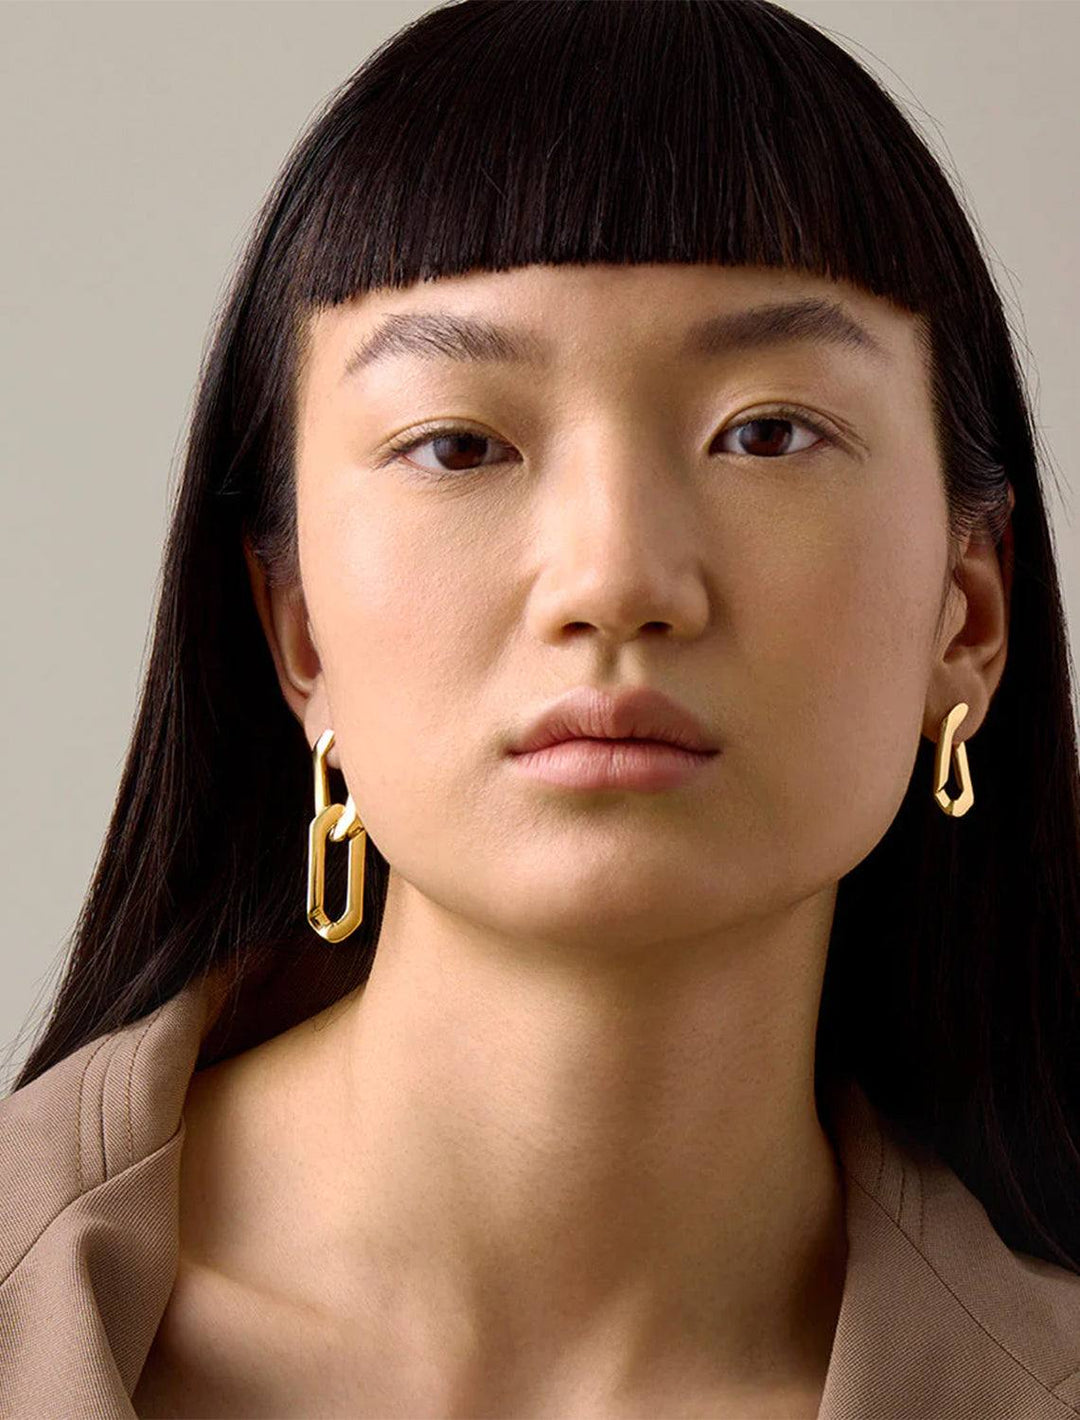 Model wearing Jenny Bird's rafael earrings in gold.